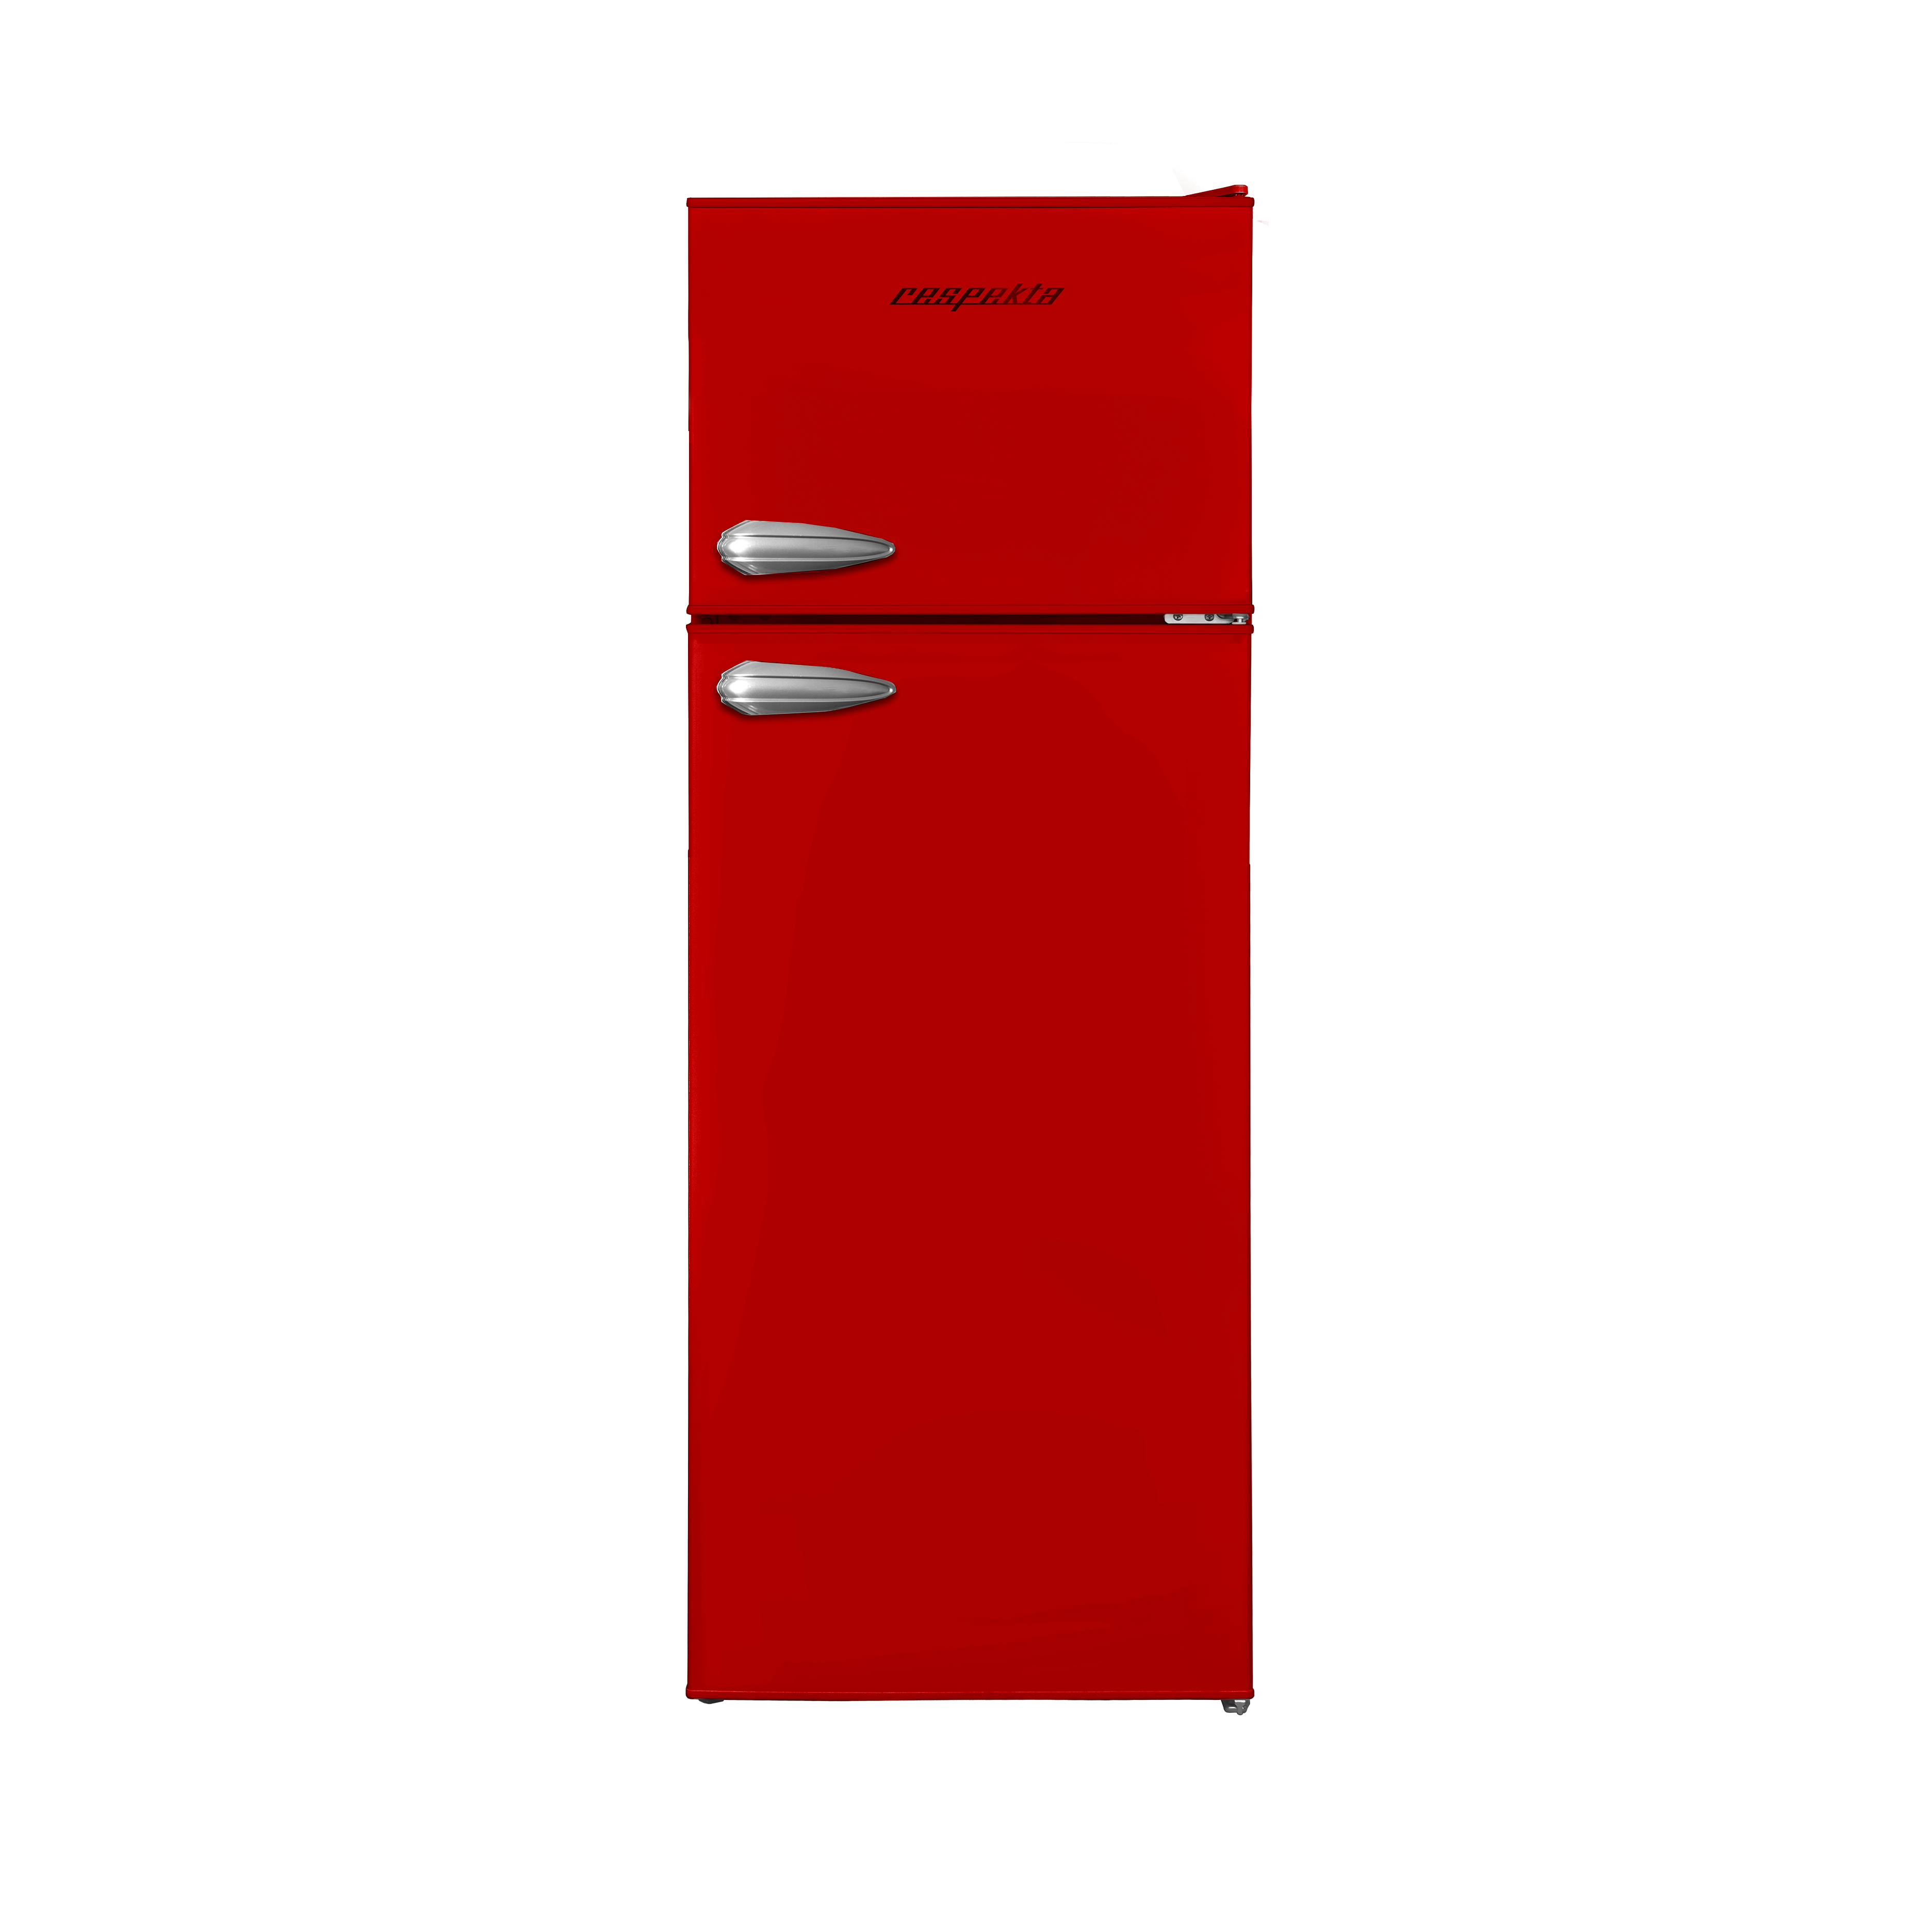 RESPEKTA cm 144 (E, KS144VR hoch, Rot) Kühl-Gefrierkombination